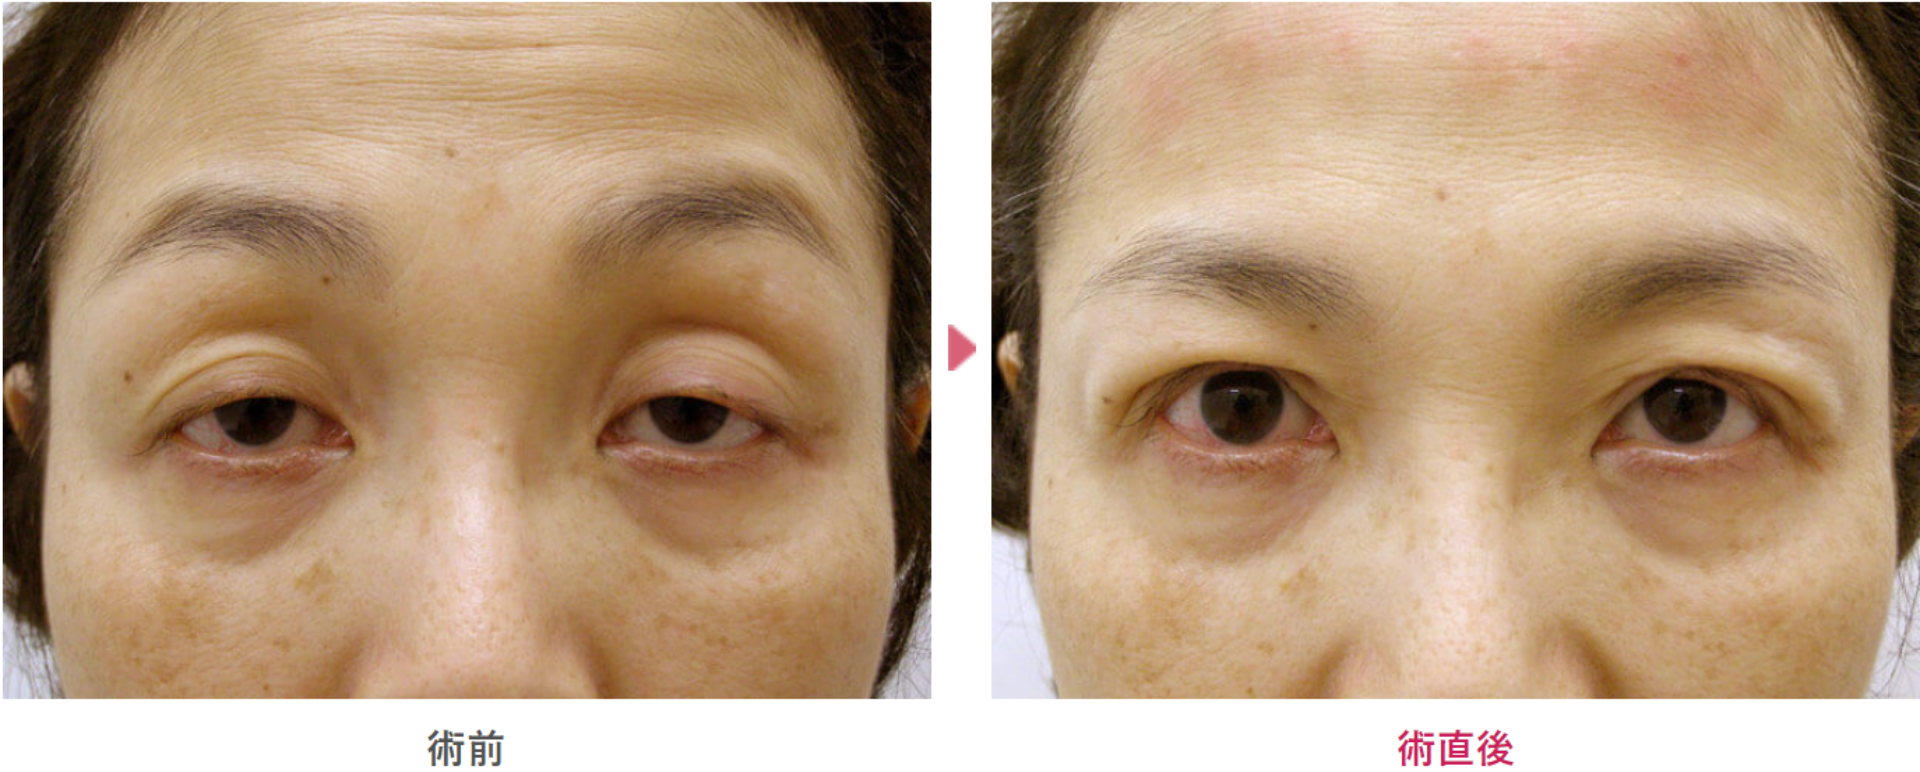 コンタクトレンズ性眼瞼下垂の術前と術直後の見た目の変化を表す症例写真